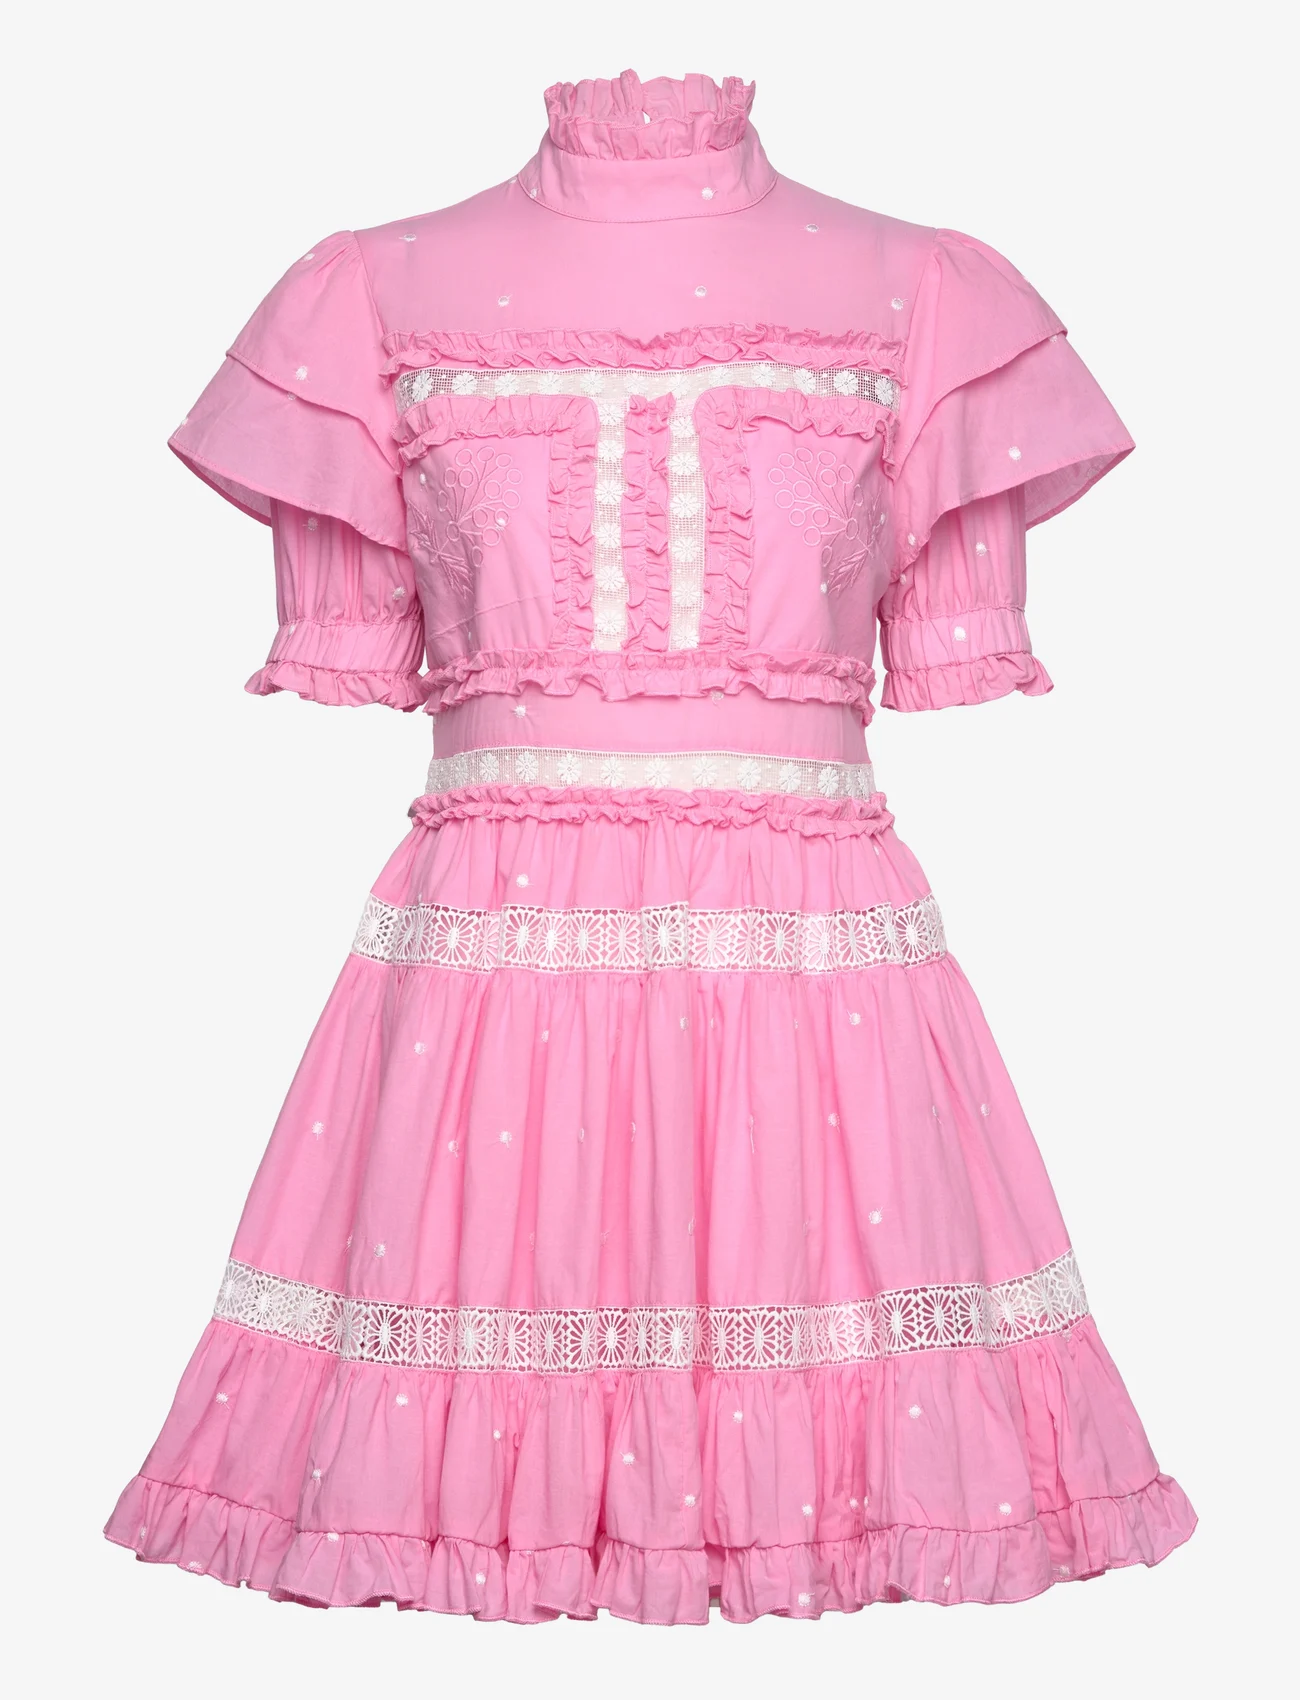 Malina - Iro mini dress - blush pink - 0